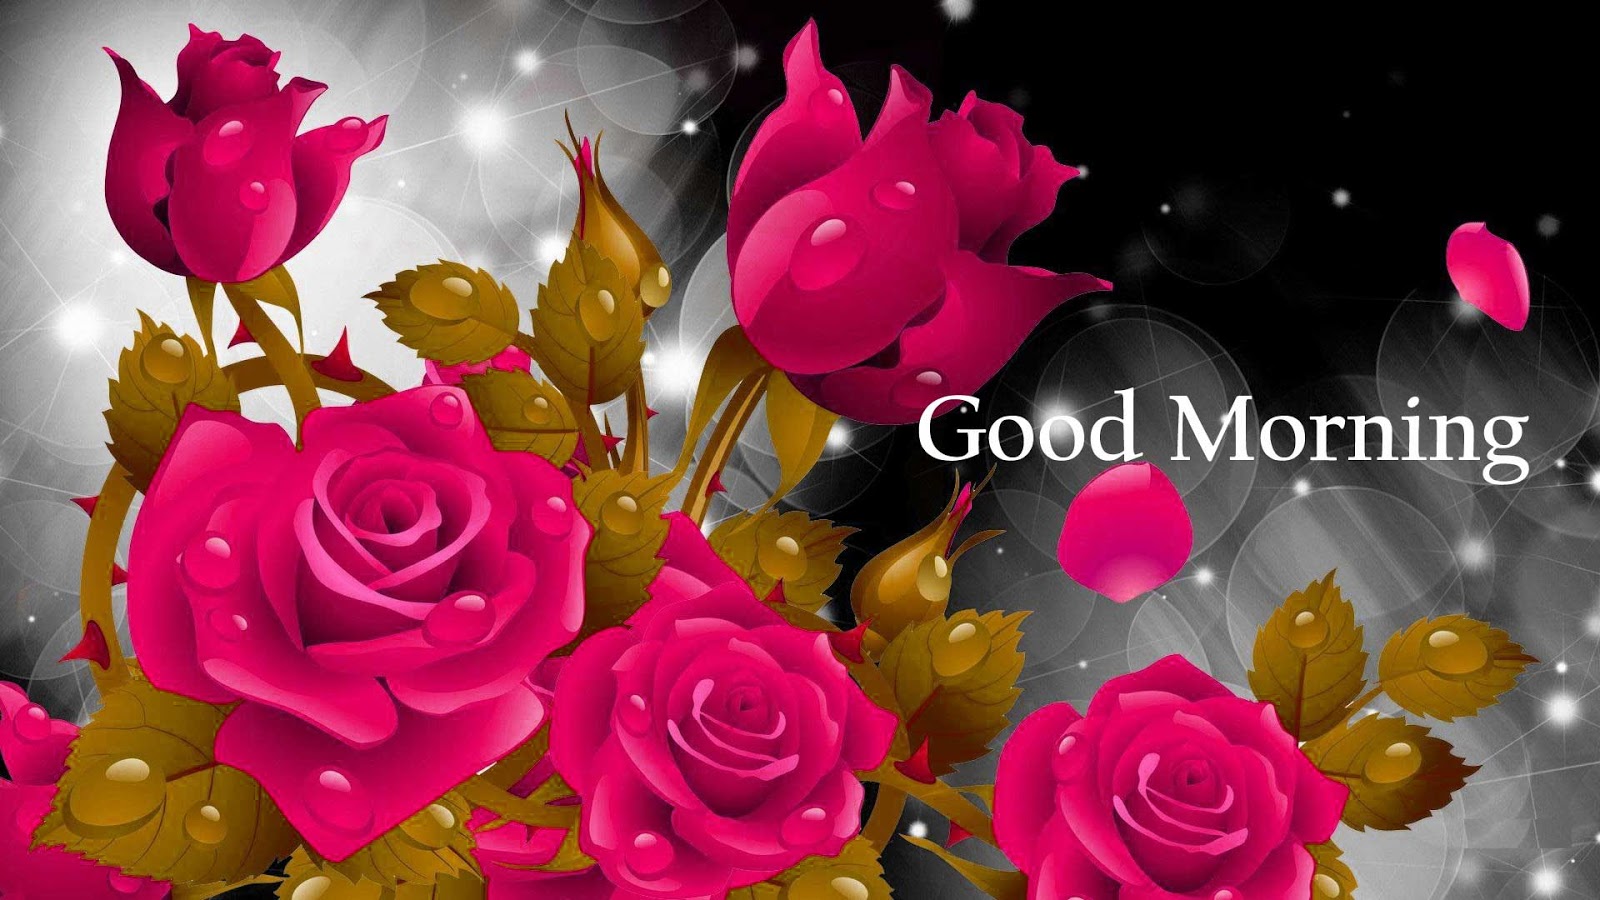 Good Morning Roses - Good Morning Rose Flower Hd - 1600x900 Wallpaper -  